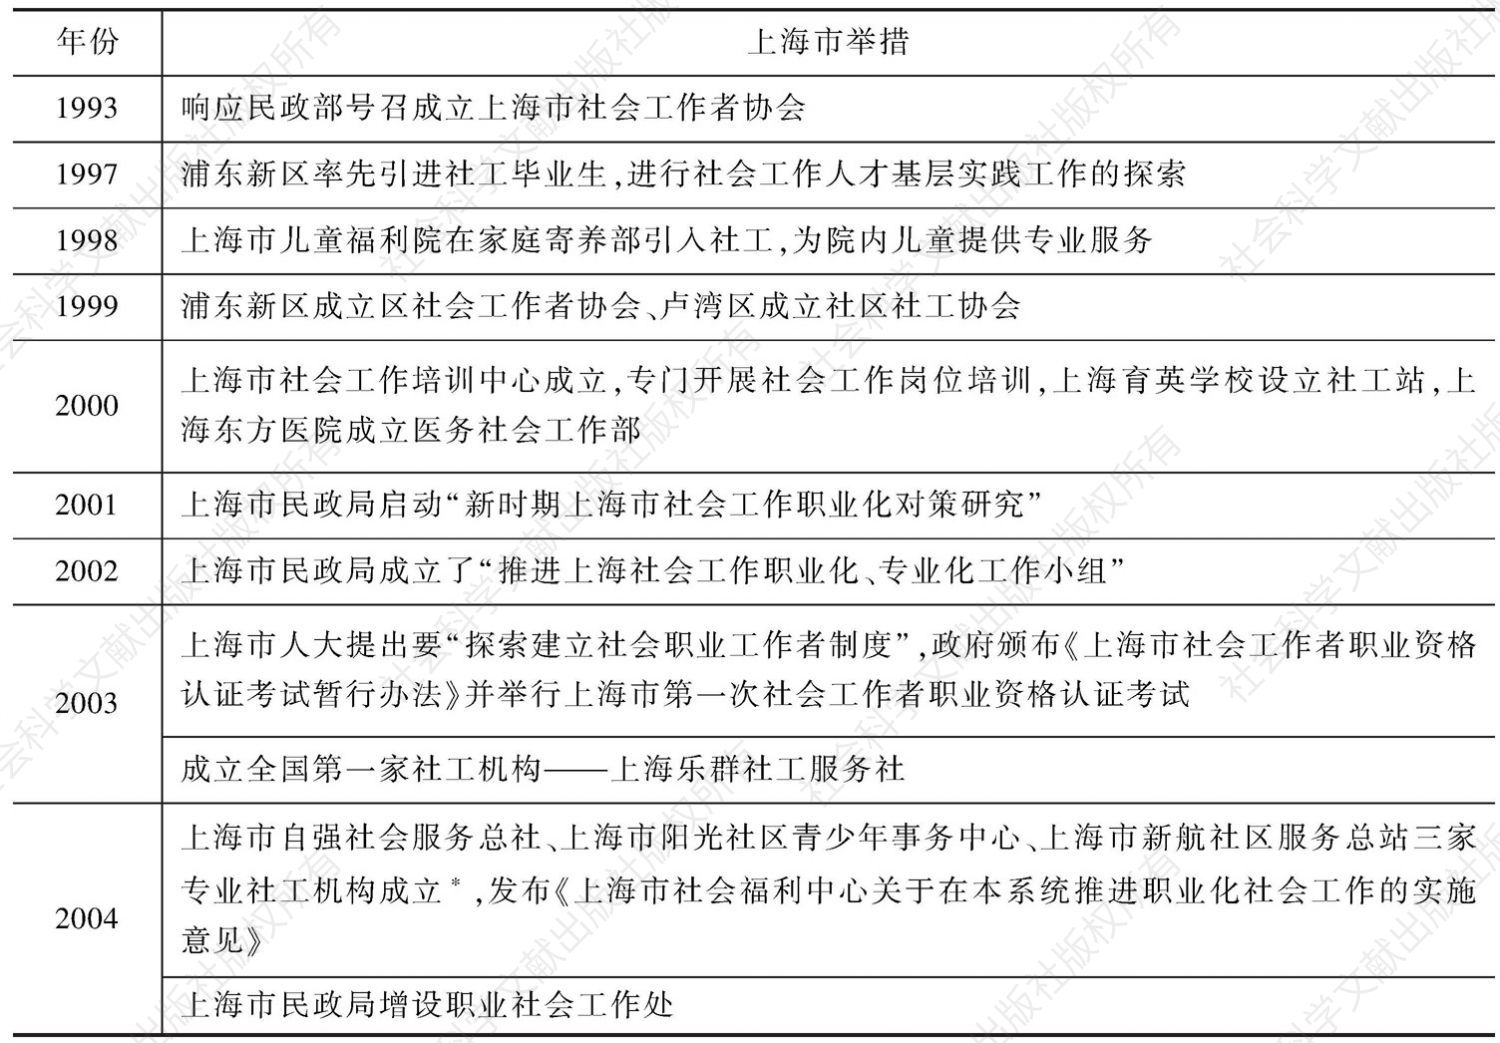 表2 上海市在发展社会工作和社工机构方面的尝试